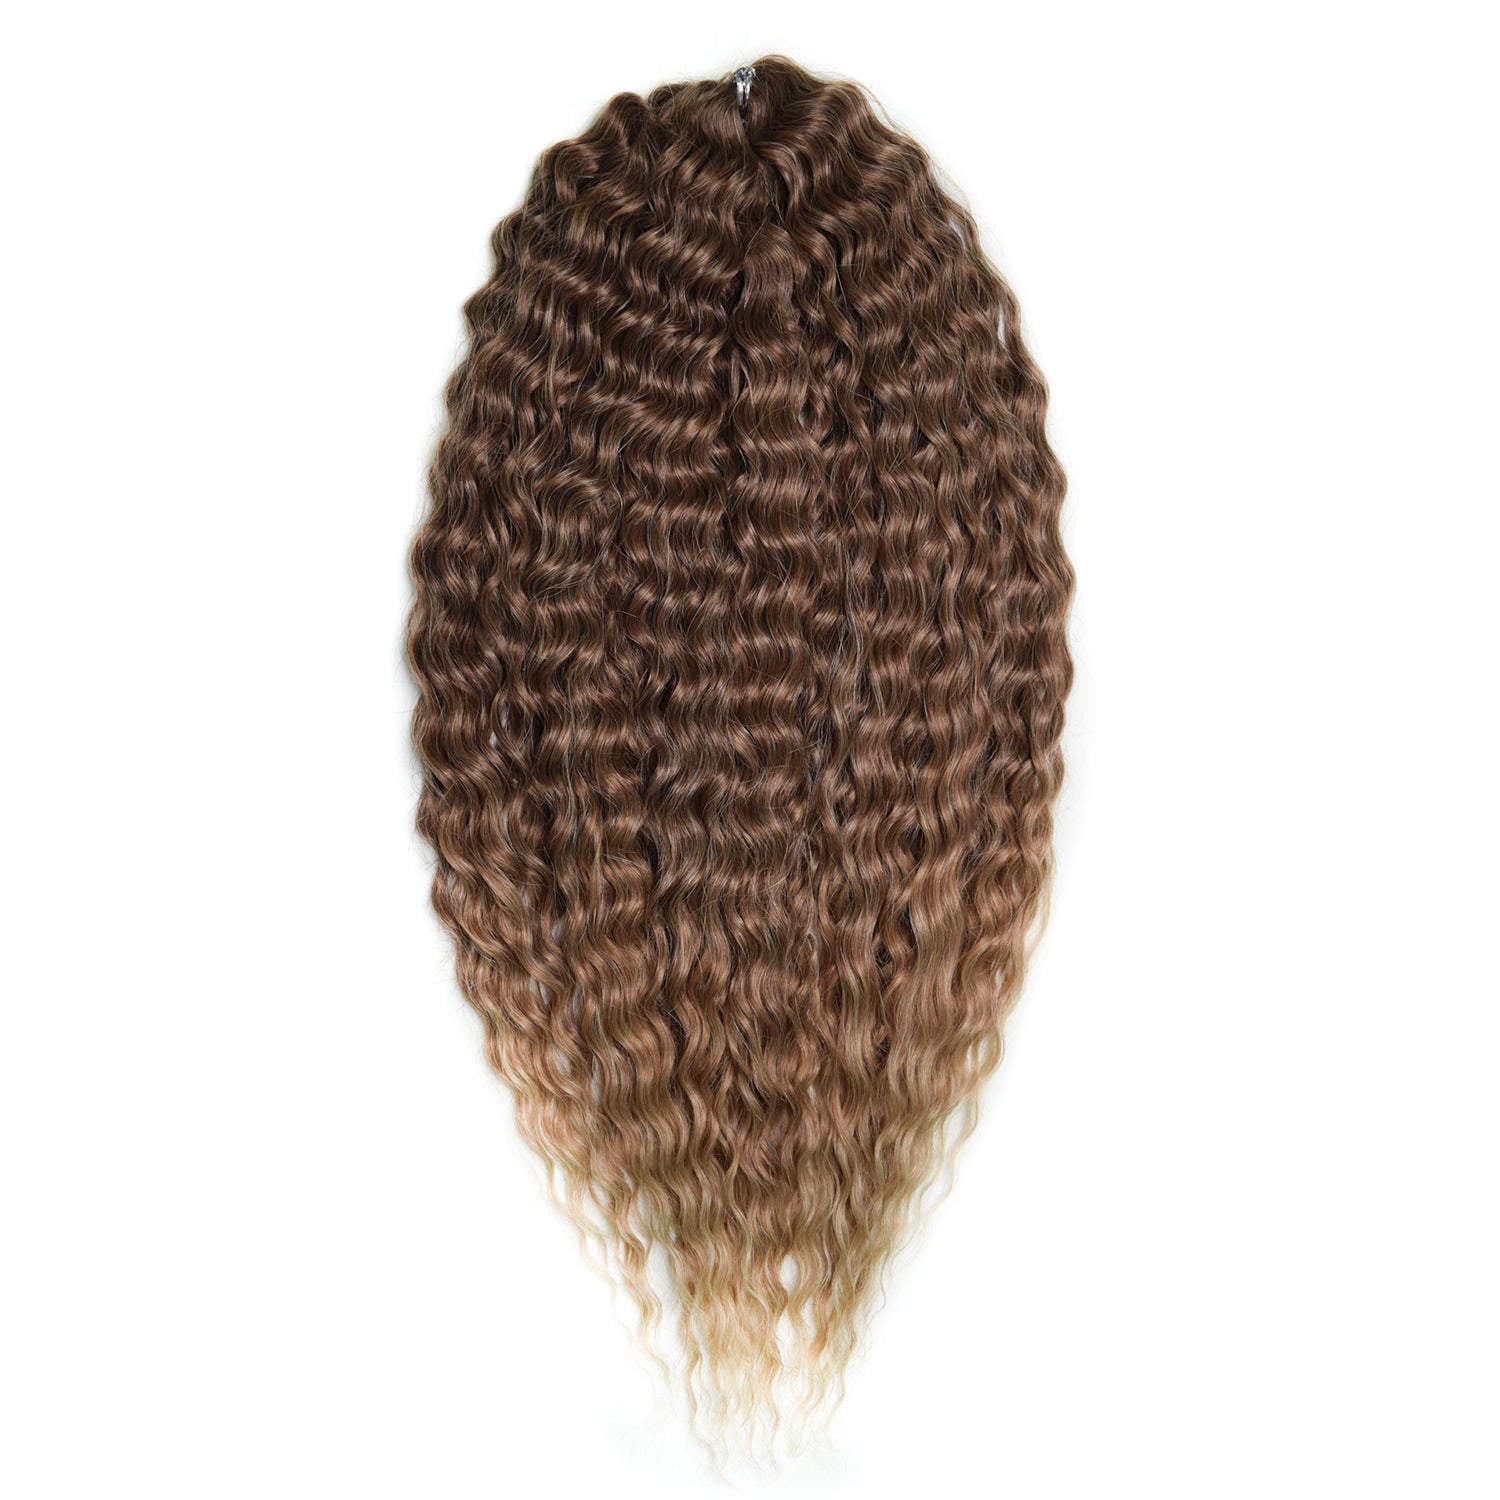 Афрокудри для плетения волос Ariel цвет 042 светлый-каштан длина 55см вес 300г резиночки для плетения браслетов rainbow loom персидская коллекция искристый каштан